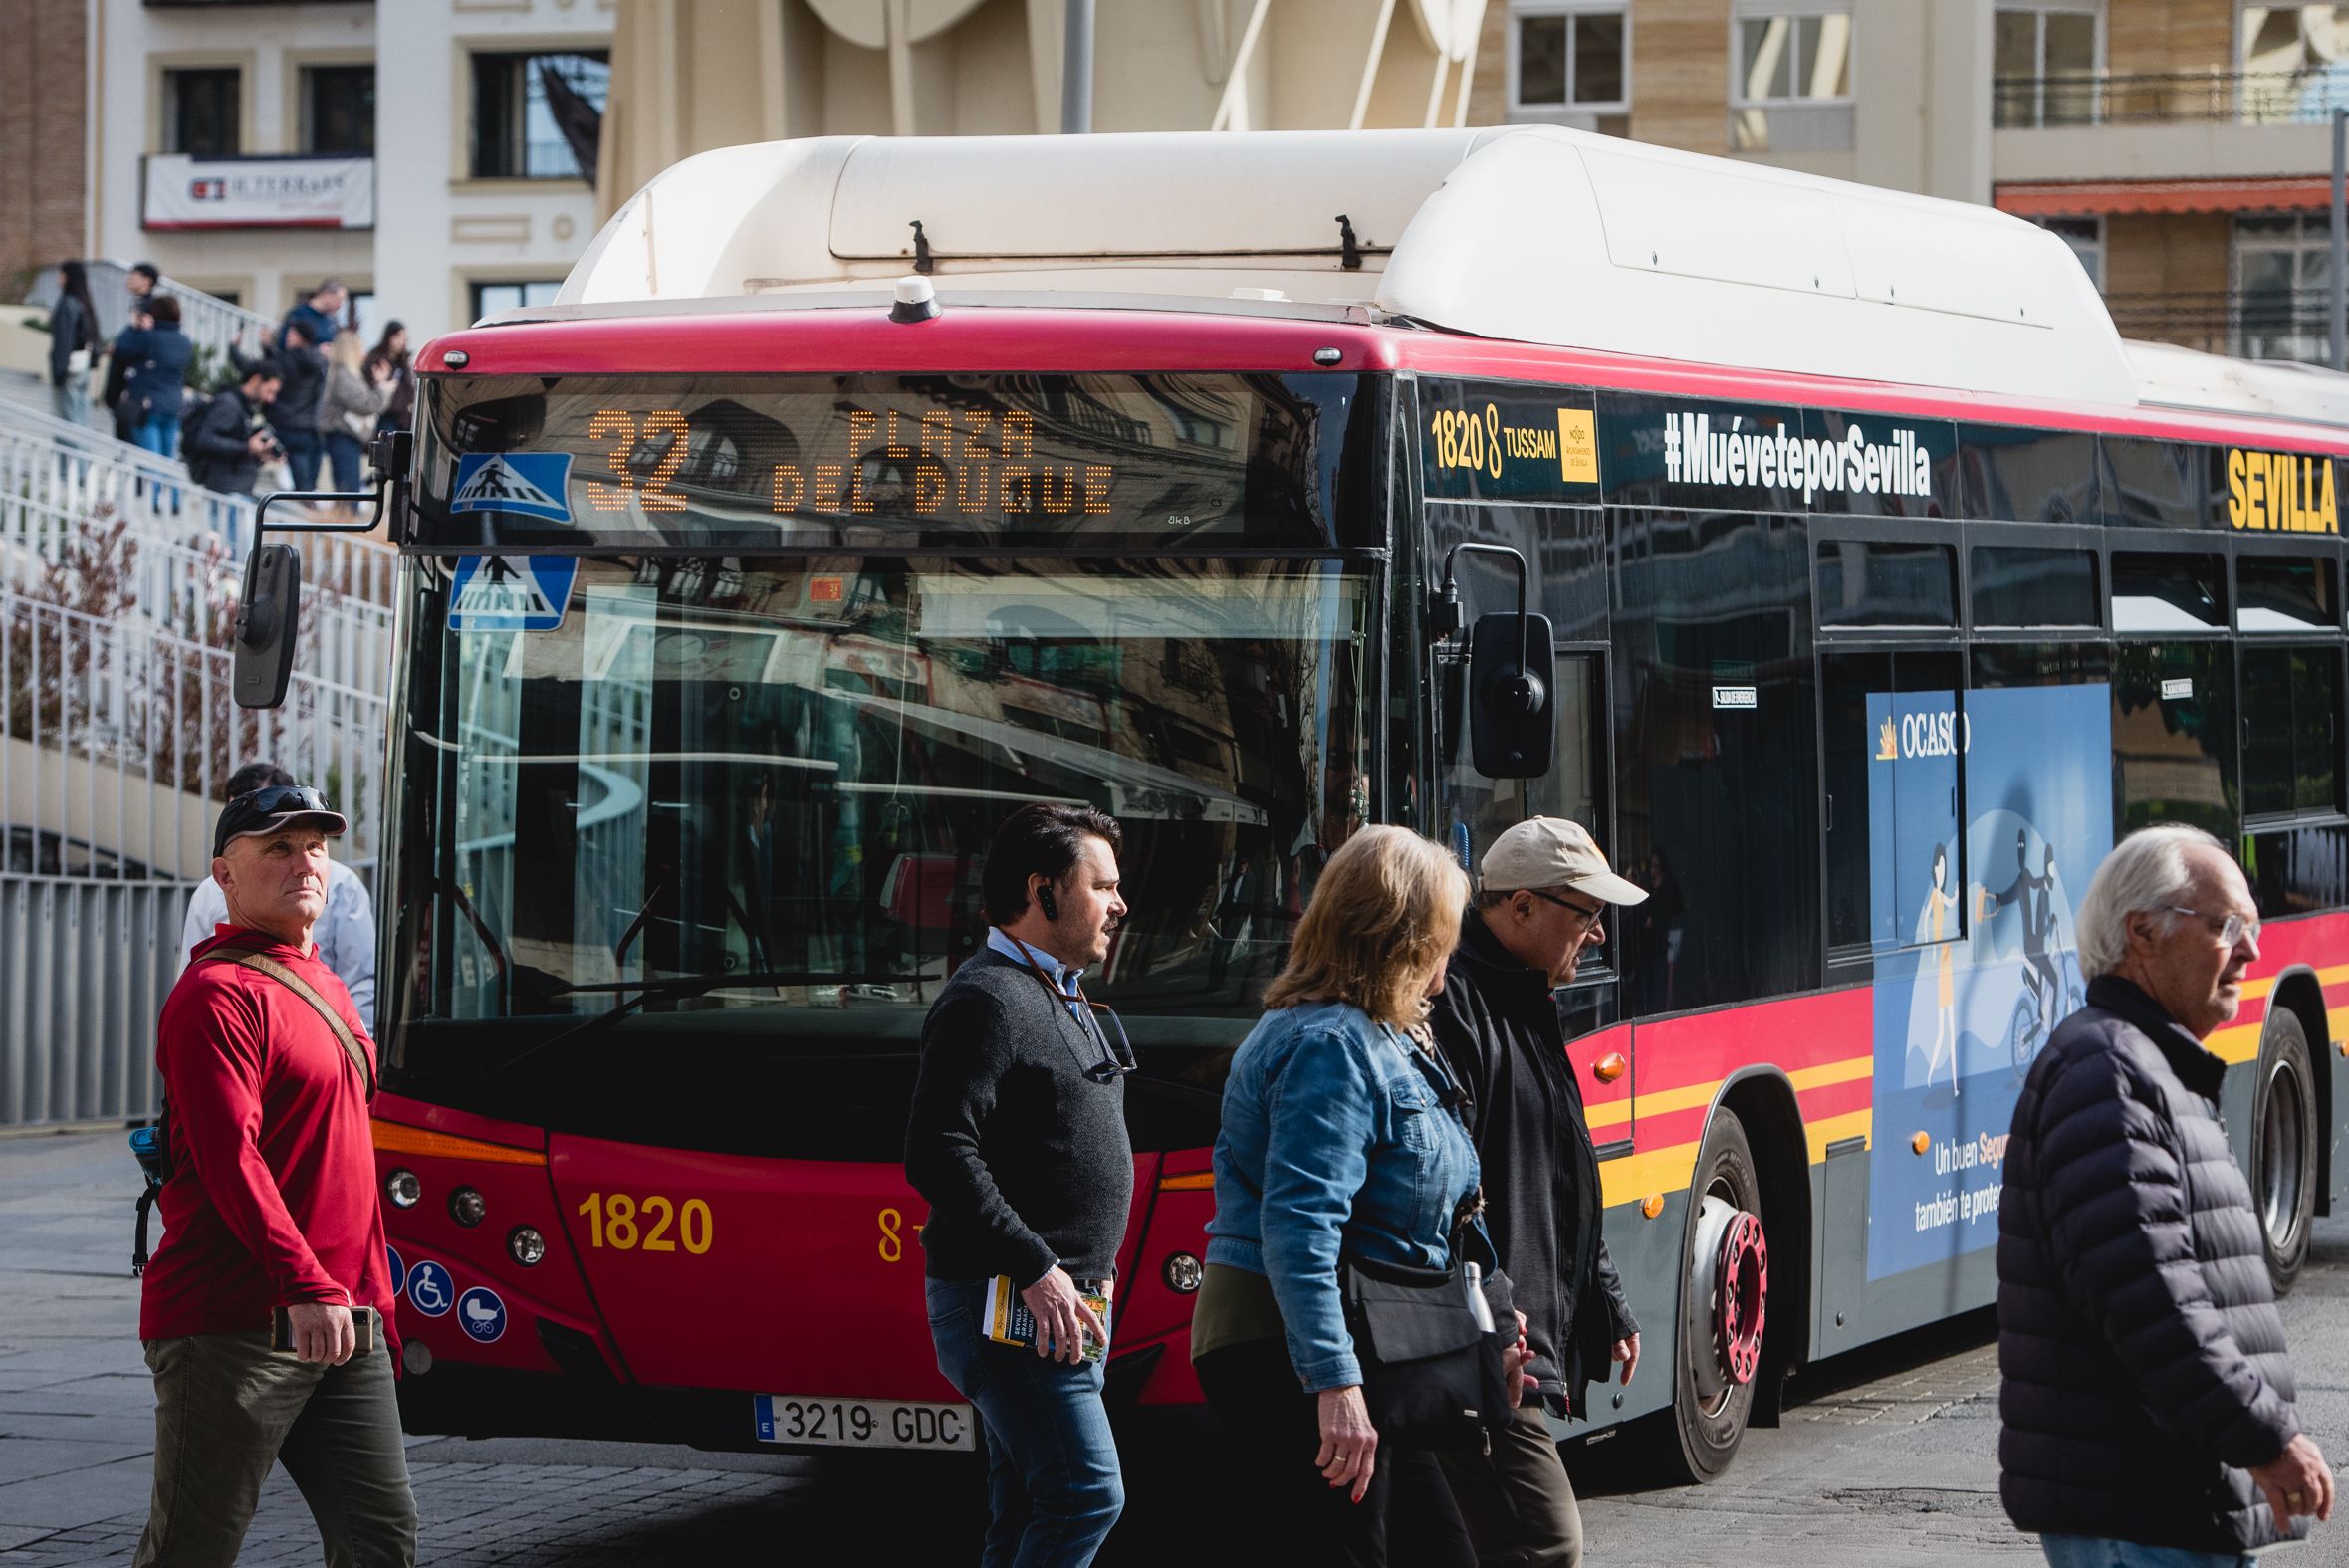 Un autobús de Tussam, empresa que está de luto tras la muerte de un trabajador, en el centro de Sevilla.